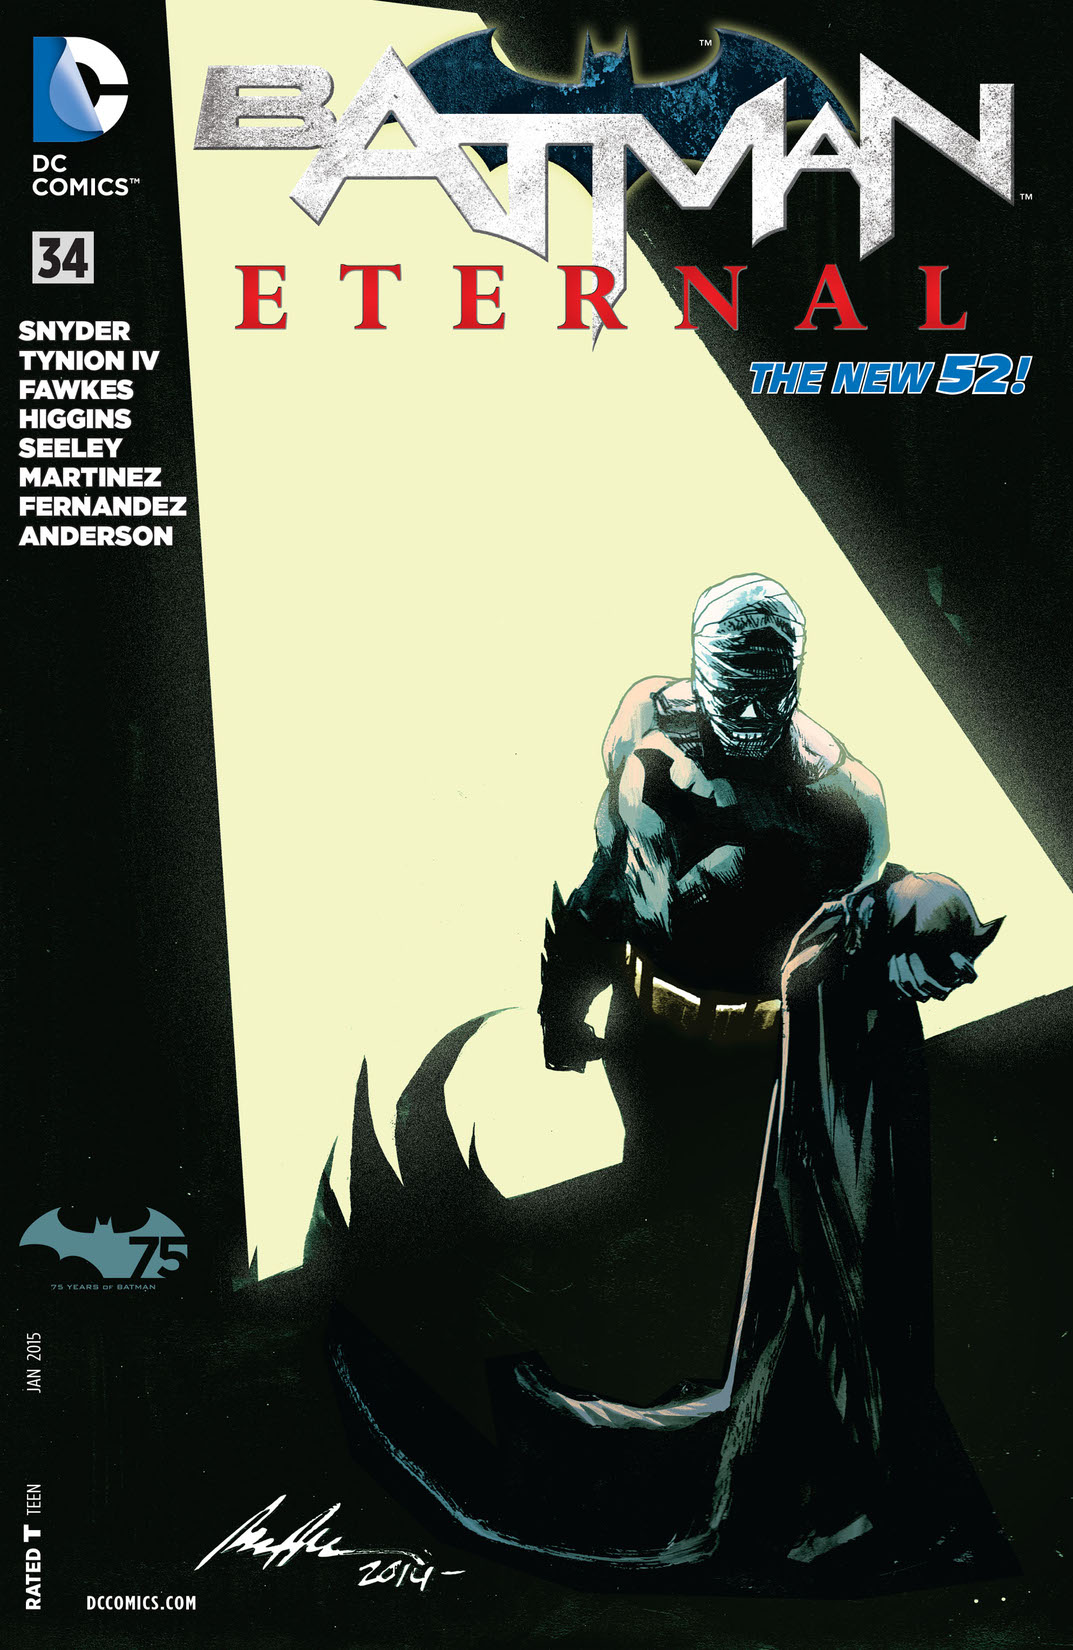 Batman Eternal #34 preview images